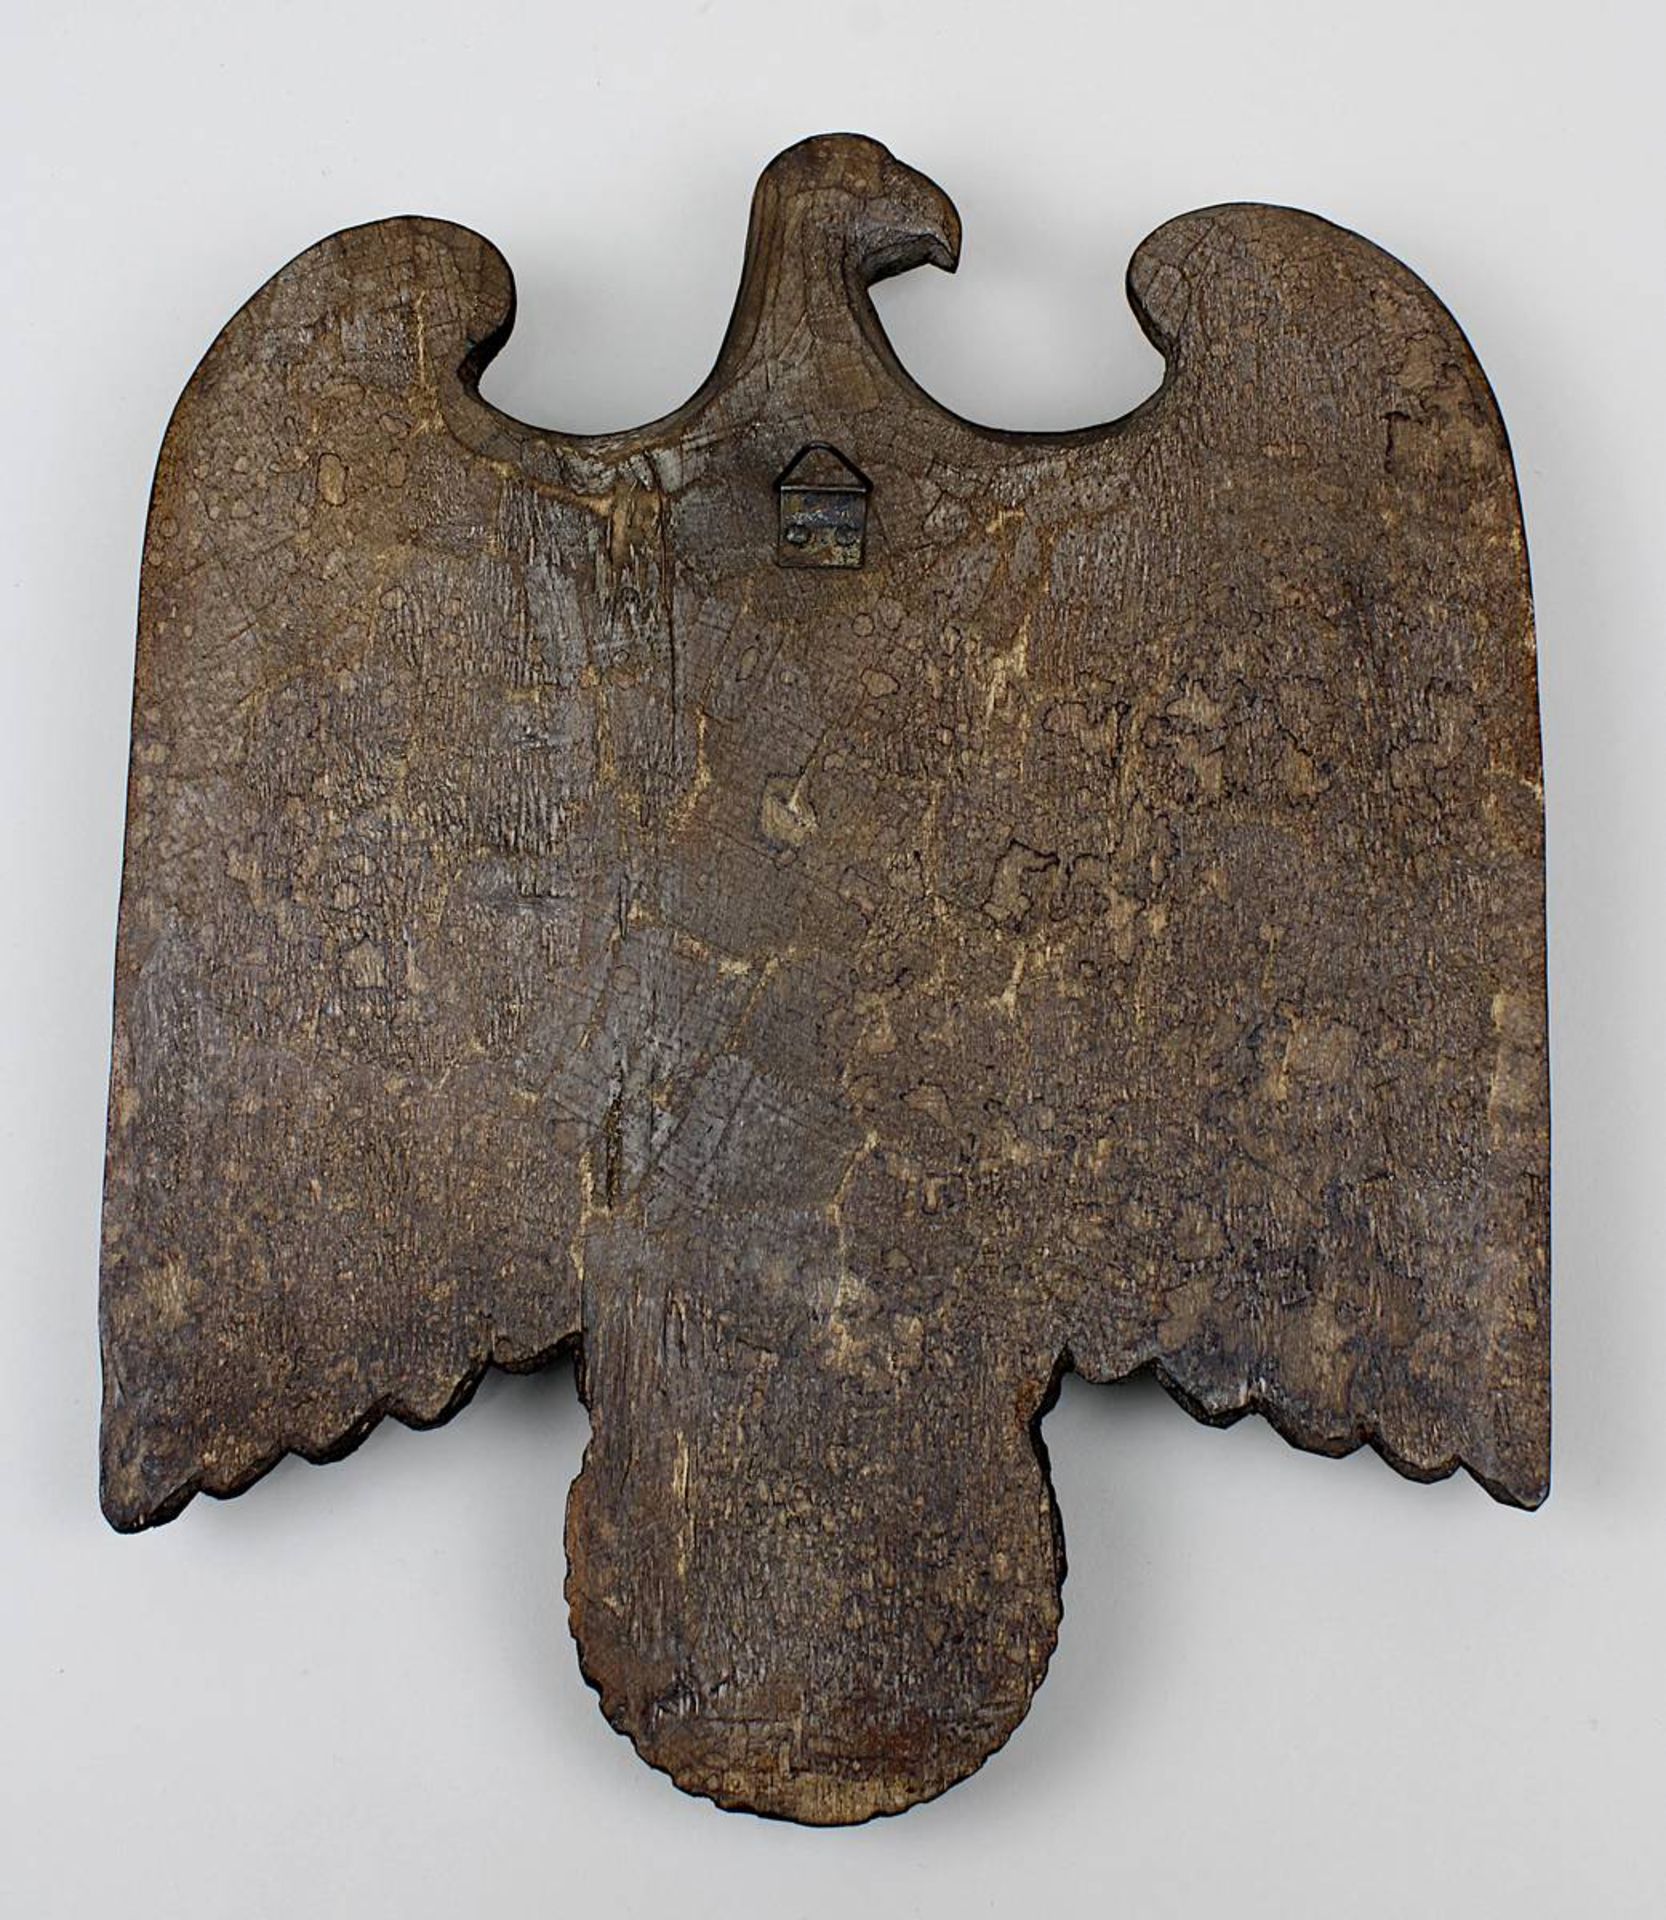 Adler aus Holz, Deutsches Reich 1933-45, aus einem Stück handgeschnitzt, Länge 24,5 cm, Breite 20 - Image 2 of 2